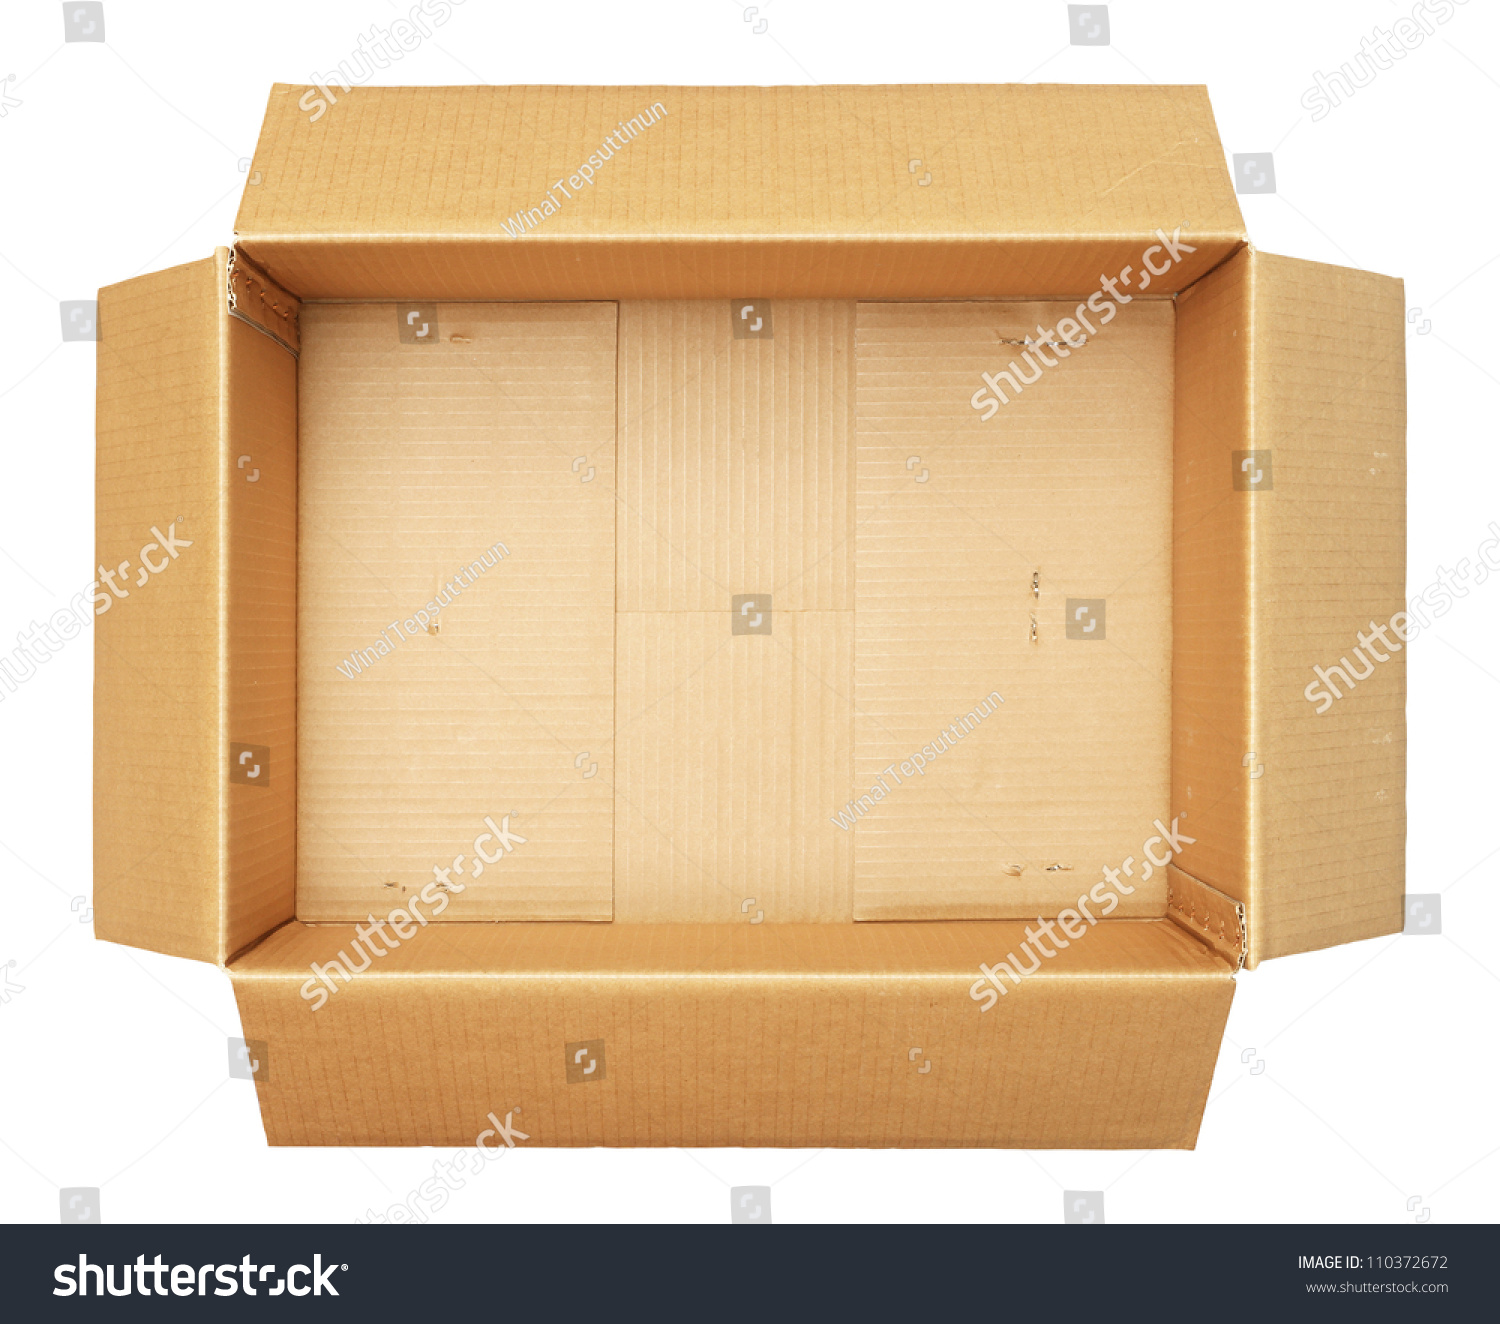 Коробка вид сверху. Коробка сверху. Картонная коробка вид сверху. Открытая картонная коробка сверху.